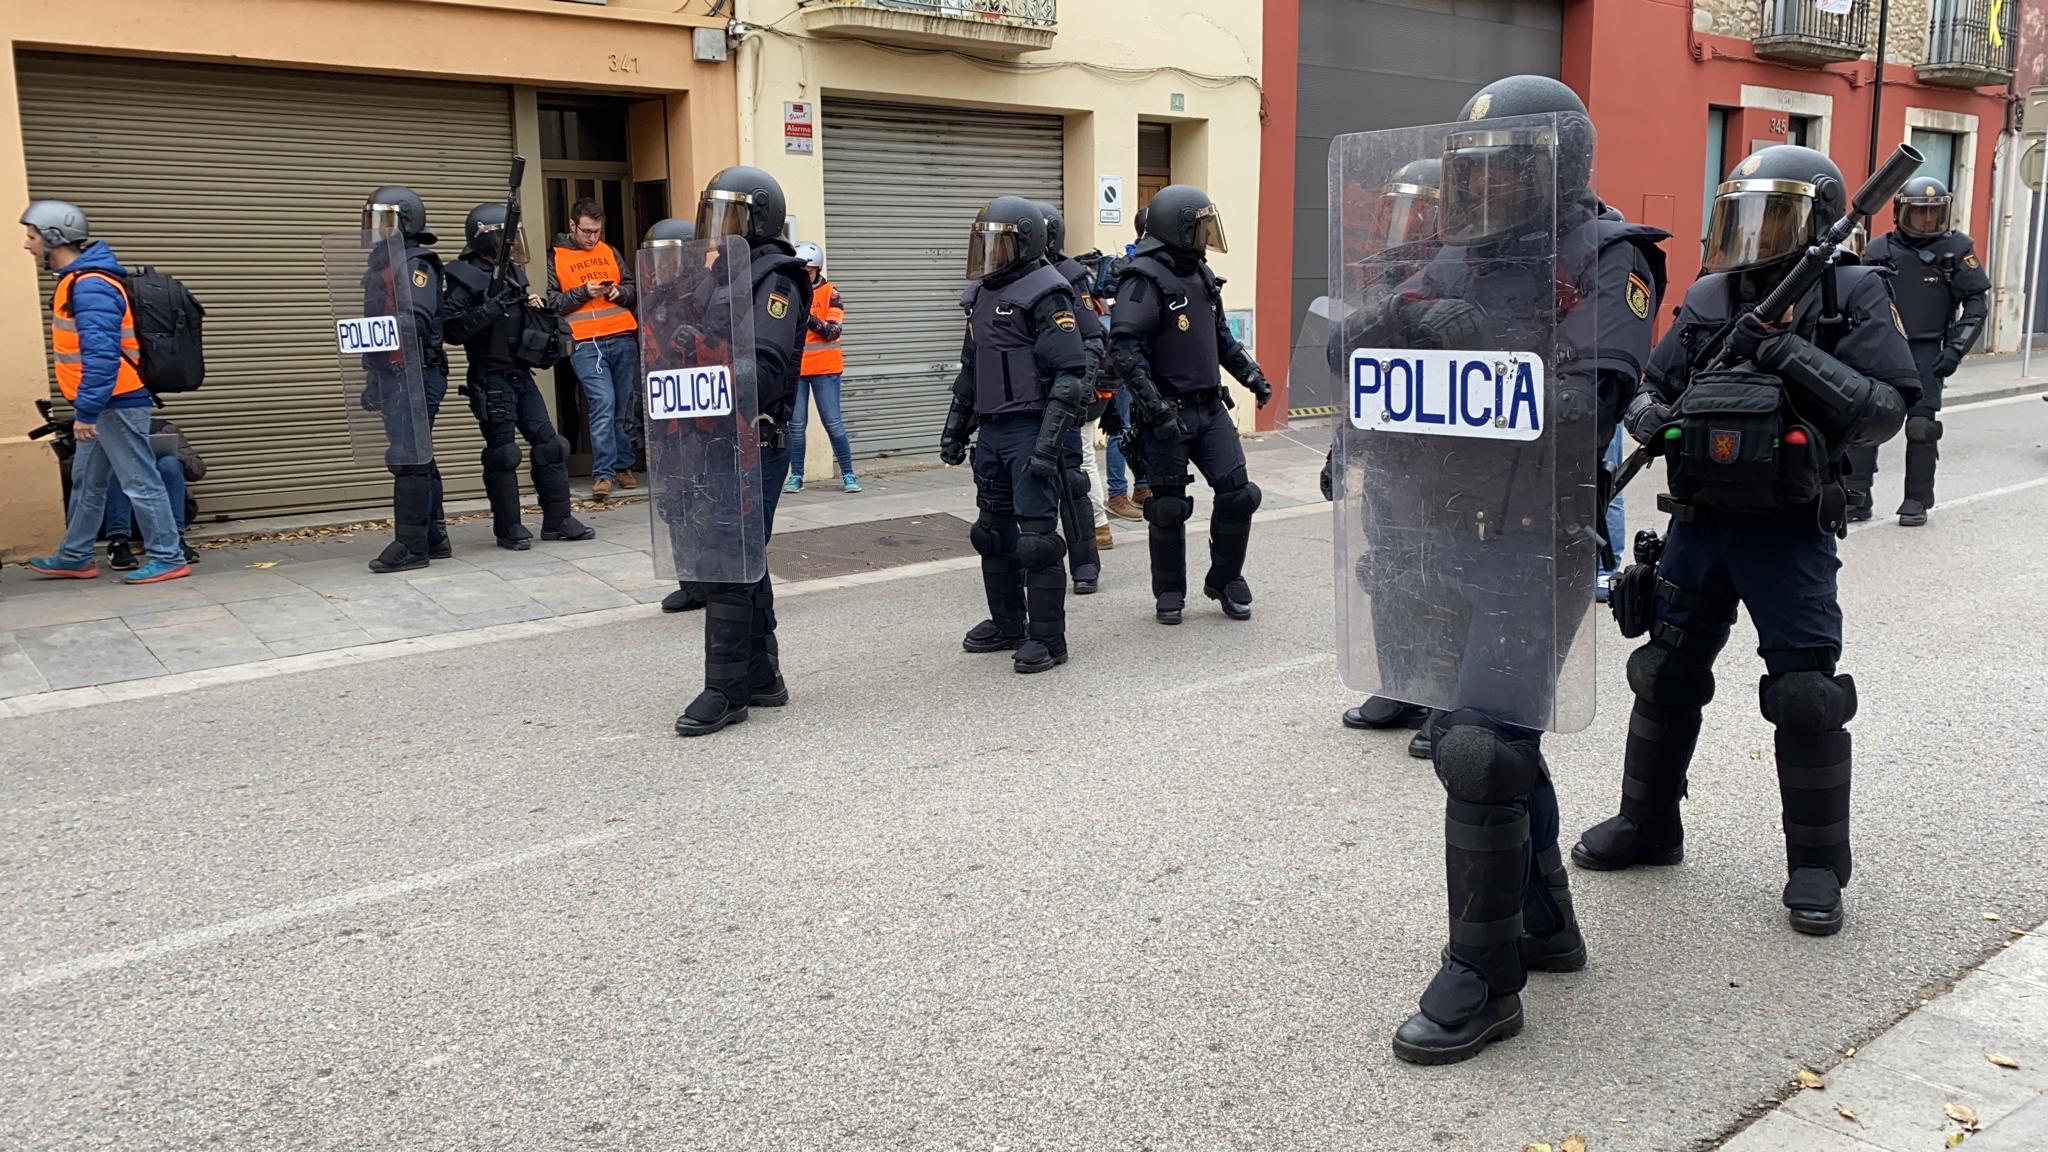 La policía desaloja la AP-7 y traslada la tensión a Girona